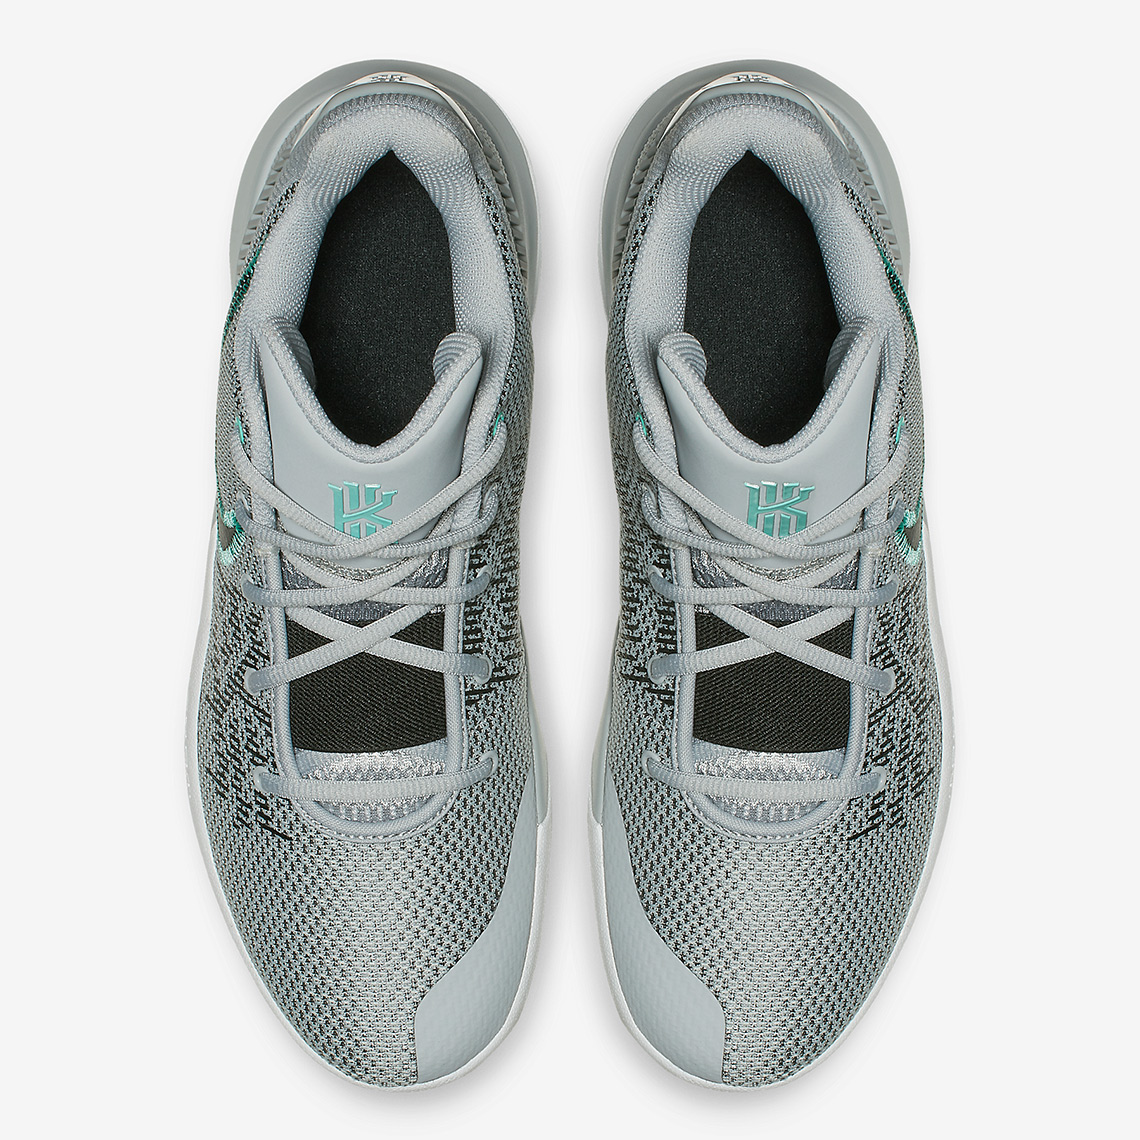 Nike Kyrie Flytrap 2 Release Info | SneakerNews.com